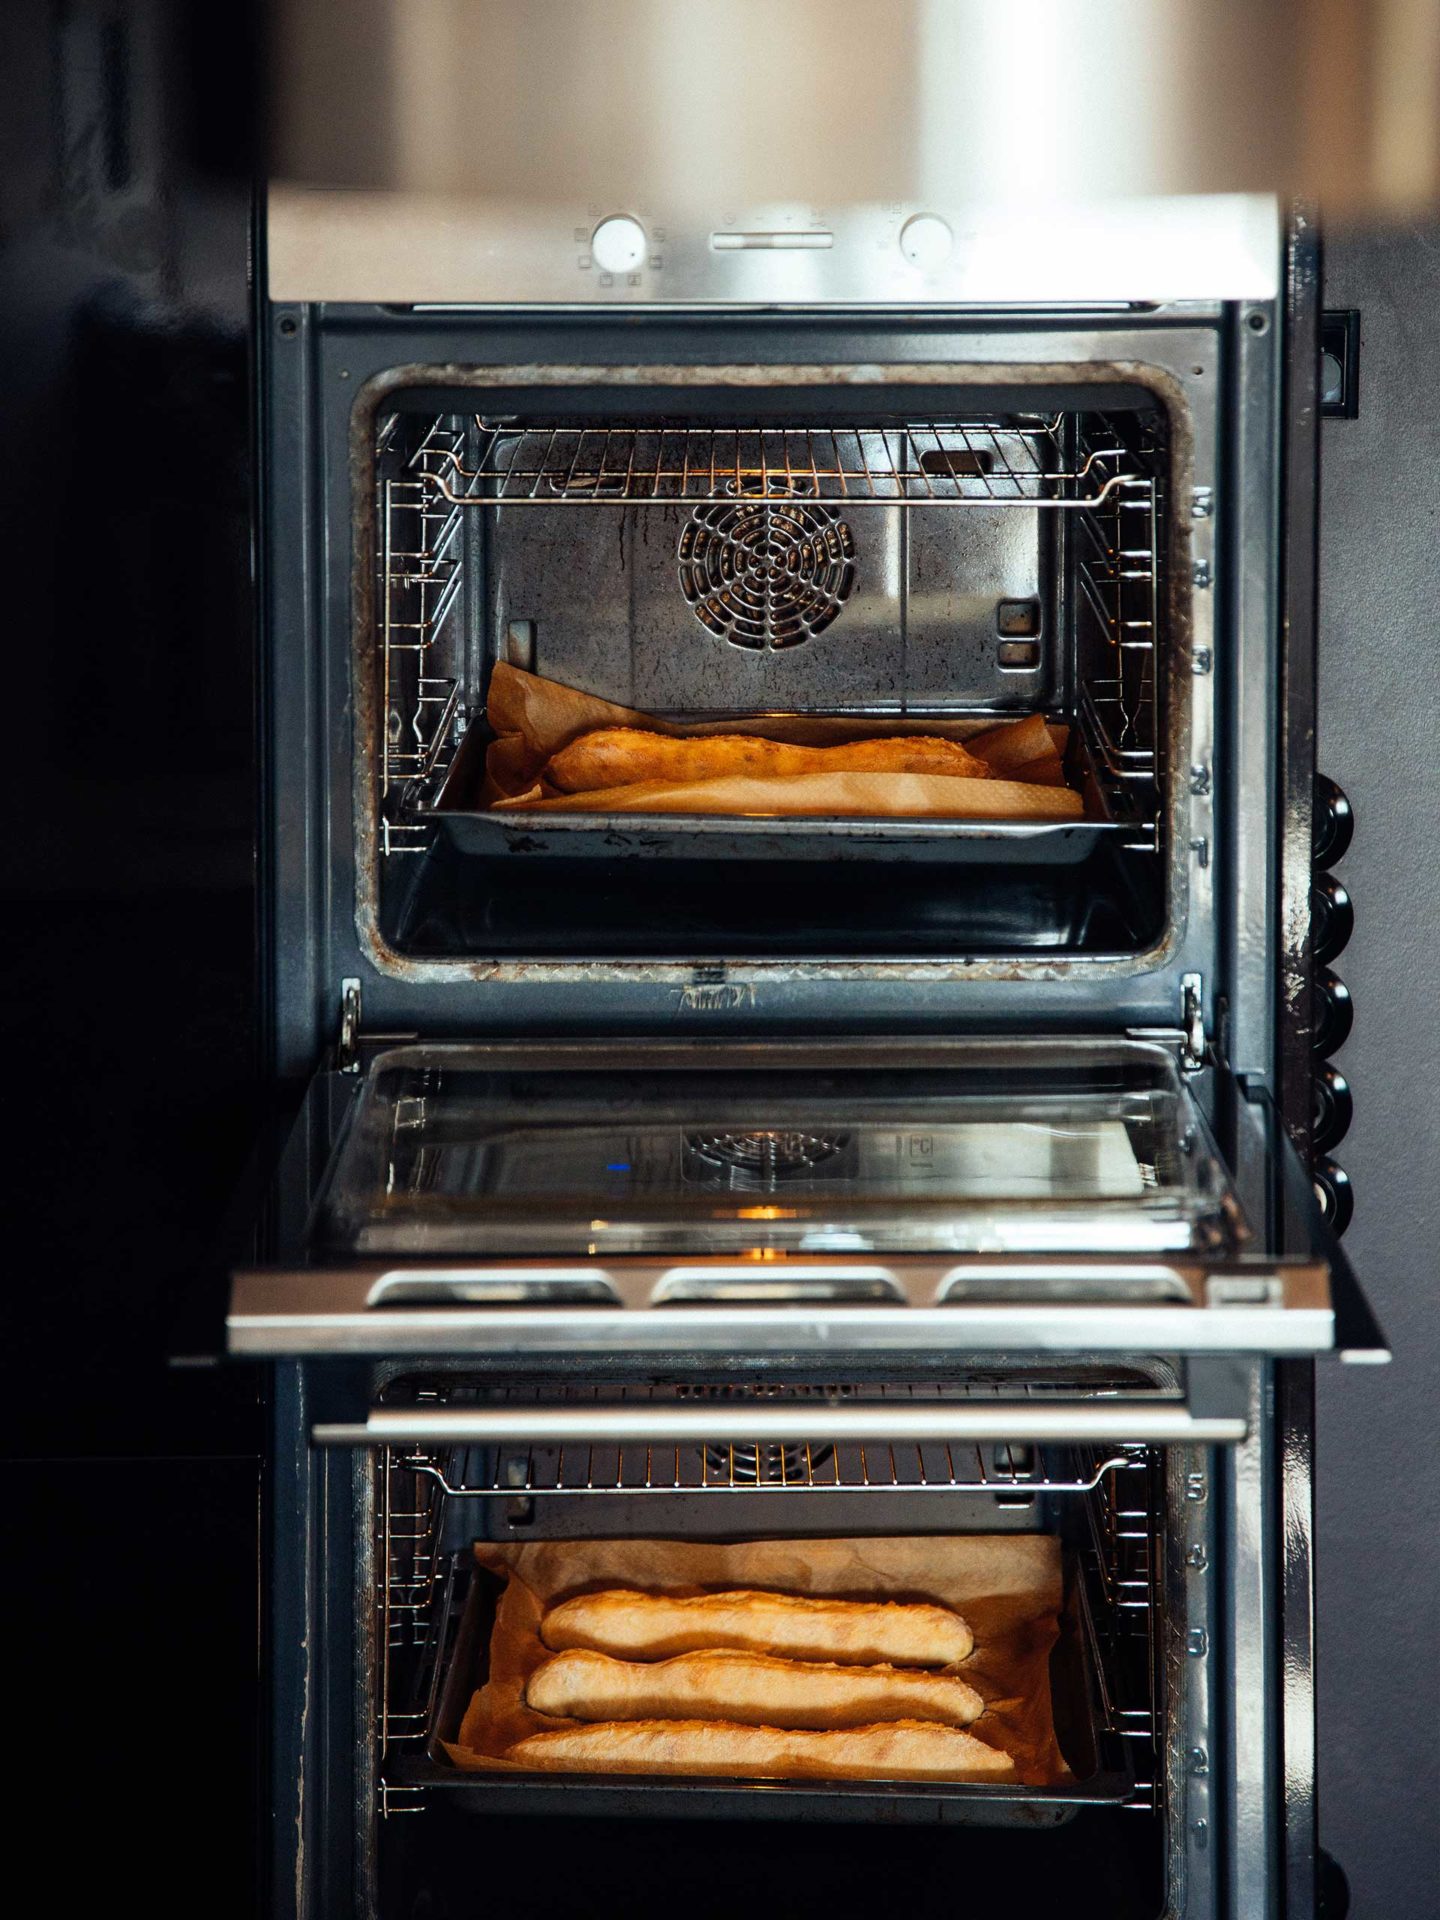 Brot für die Arche - Goldbraune Baguettes im Ofen.